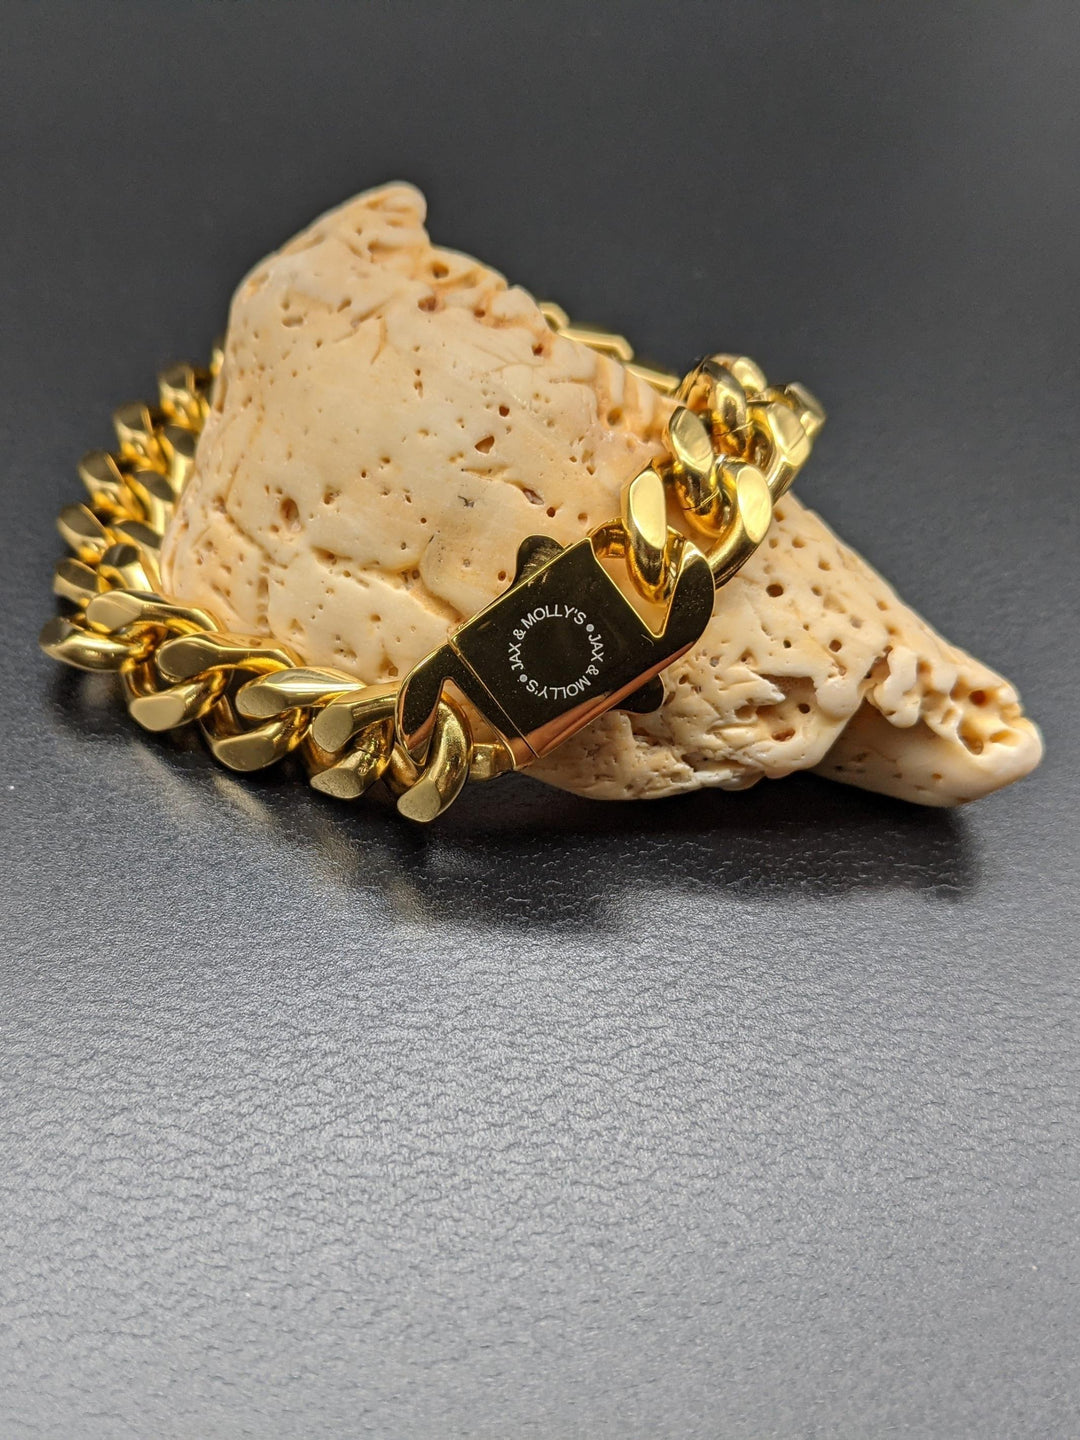 Jax & Molly's 18k gold Men's Cuban Link Bracelet in 12mm